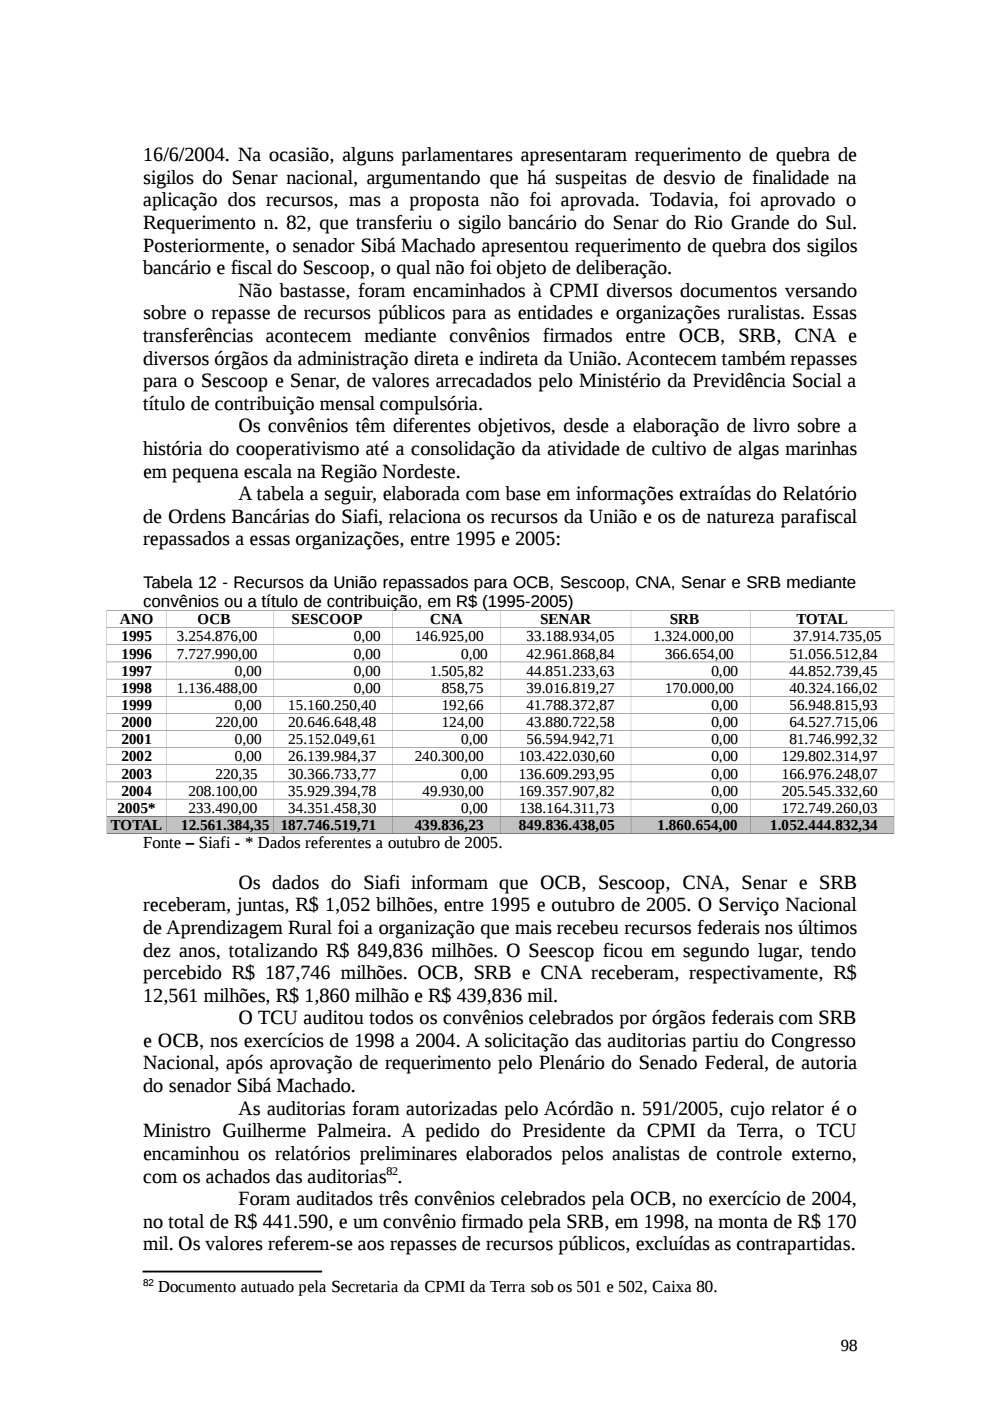 Page 98 from Relatório final da comissão